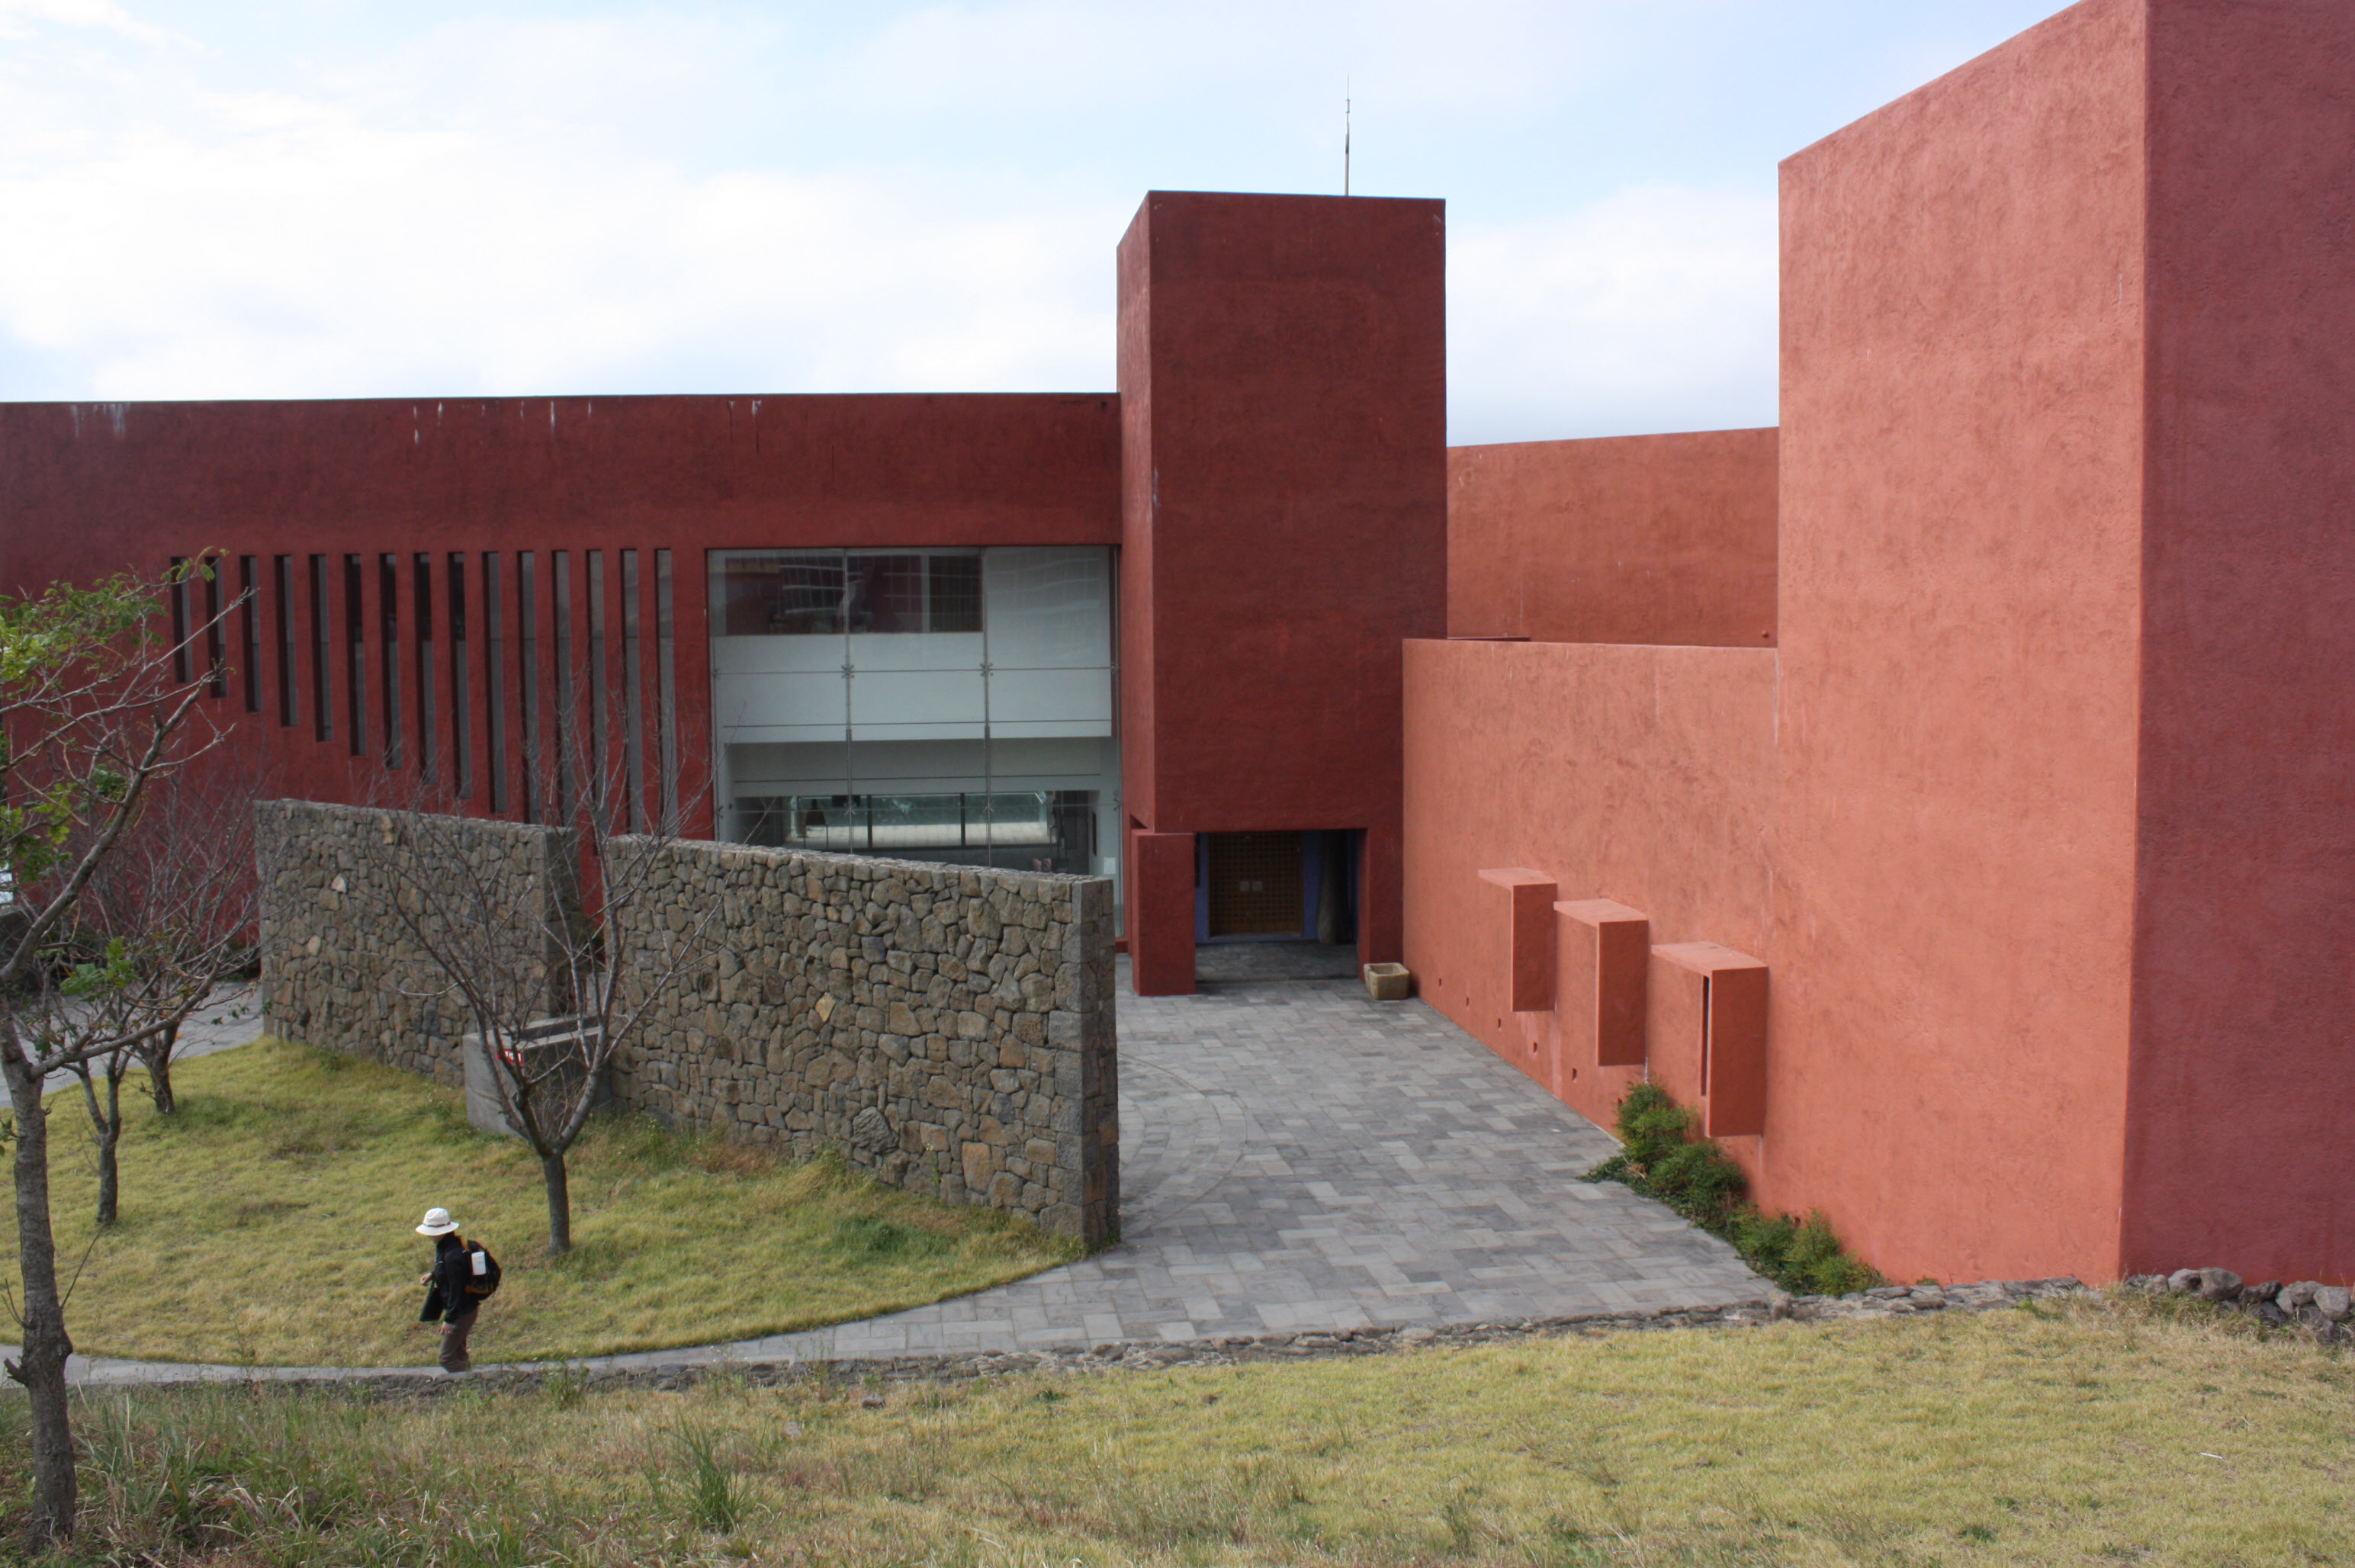 済州道西帰浦市中文観光団地にあったメキシコ出身の巨匠建築家リカルド・レゴレッタ（１９３１－２０１１）の遺作、「カサ・デル・アグア」